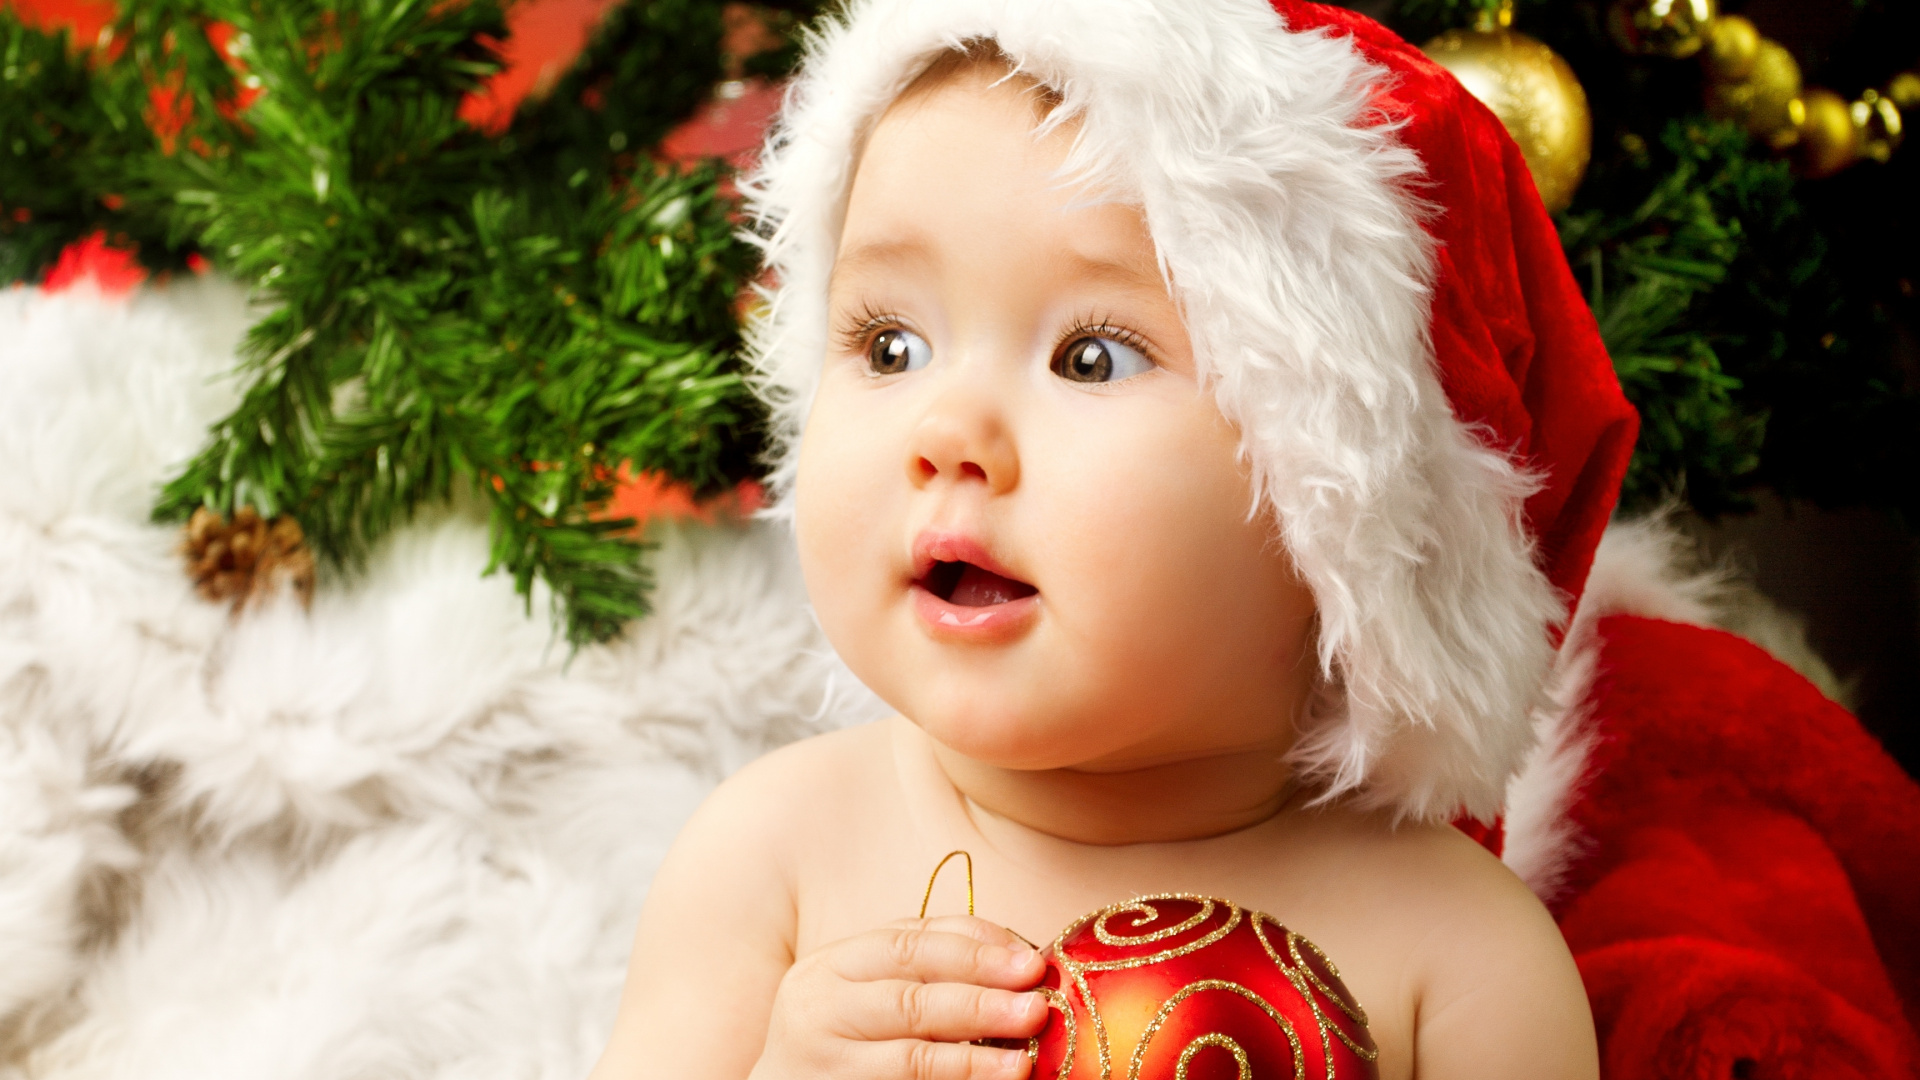 Weihnachten, Säugling, Niedlichkeit, Kind, Christmas Ornament. Wallpaper in 1920x1080 Resolution